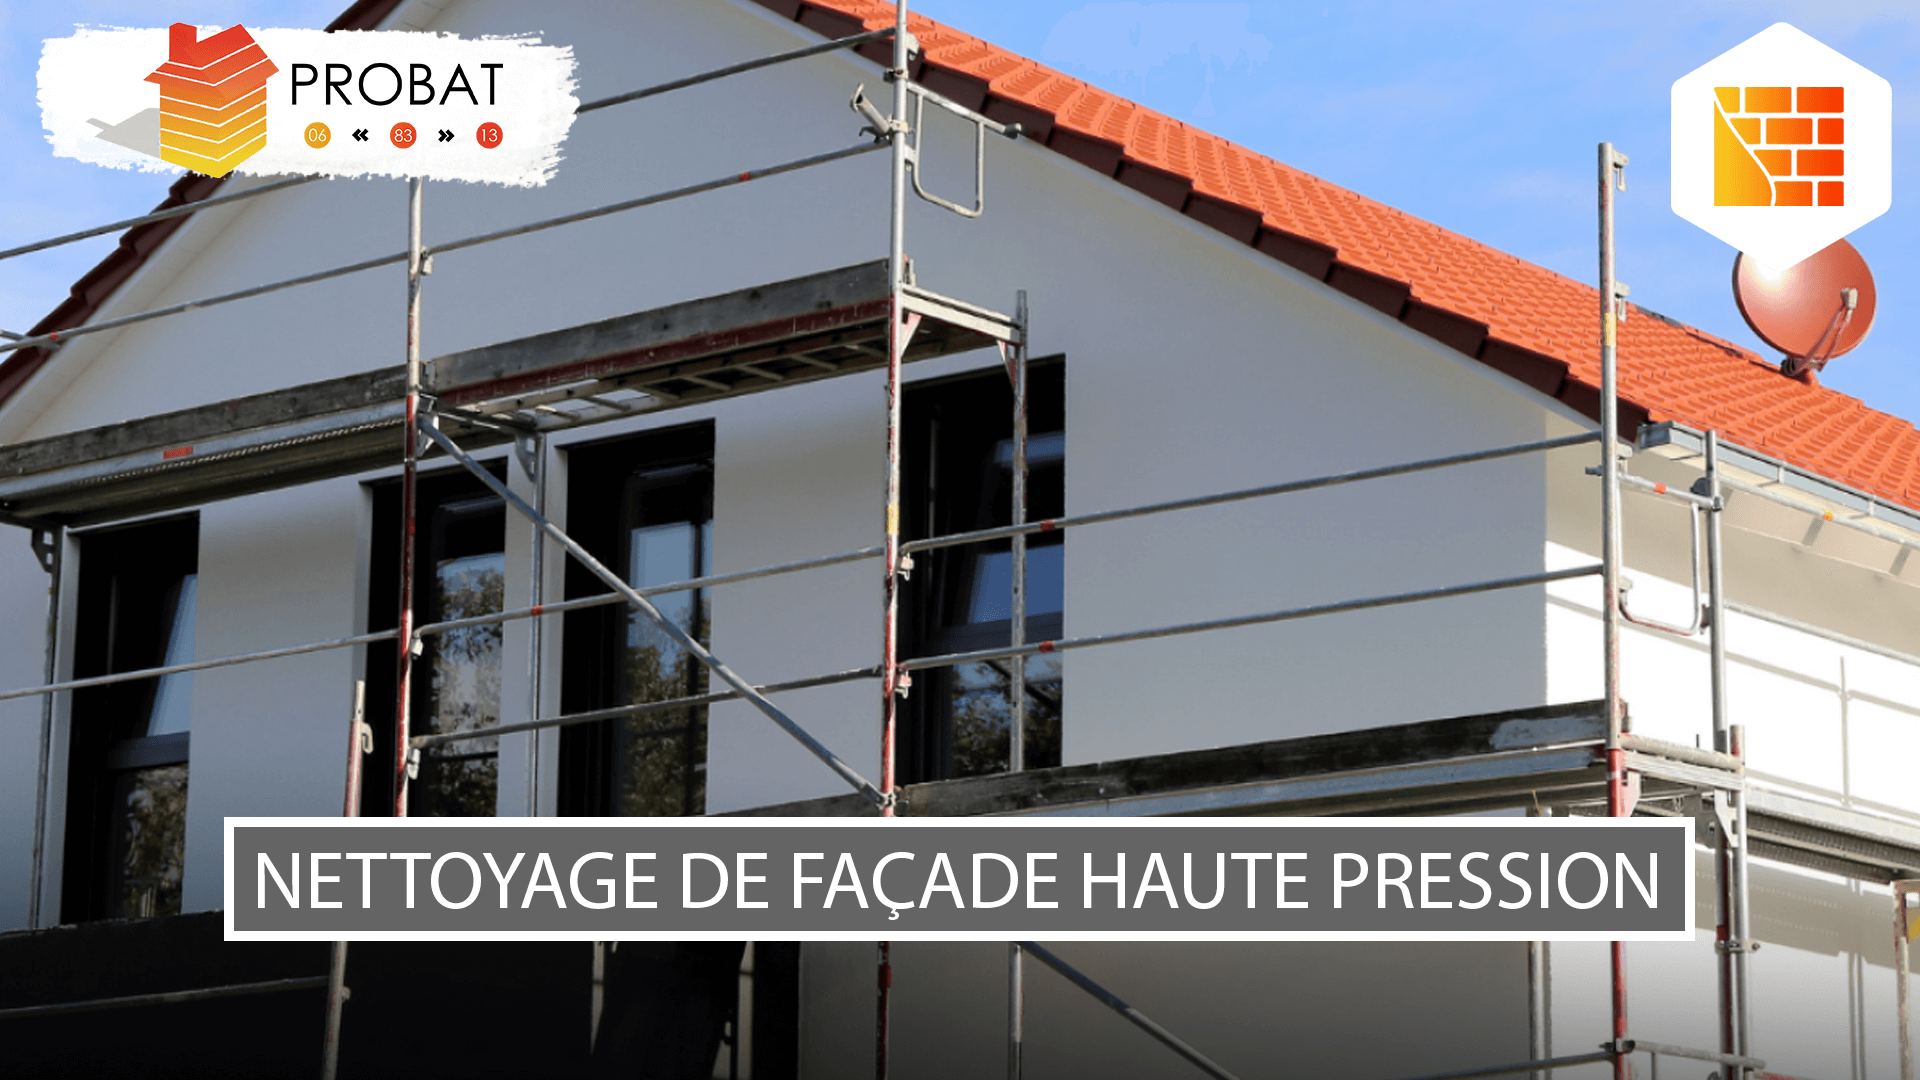 Nettoyage de façade haute pression à Brignoles - Probat 83